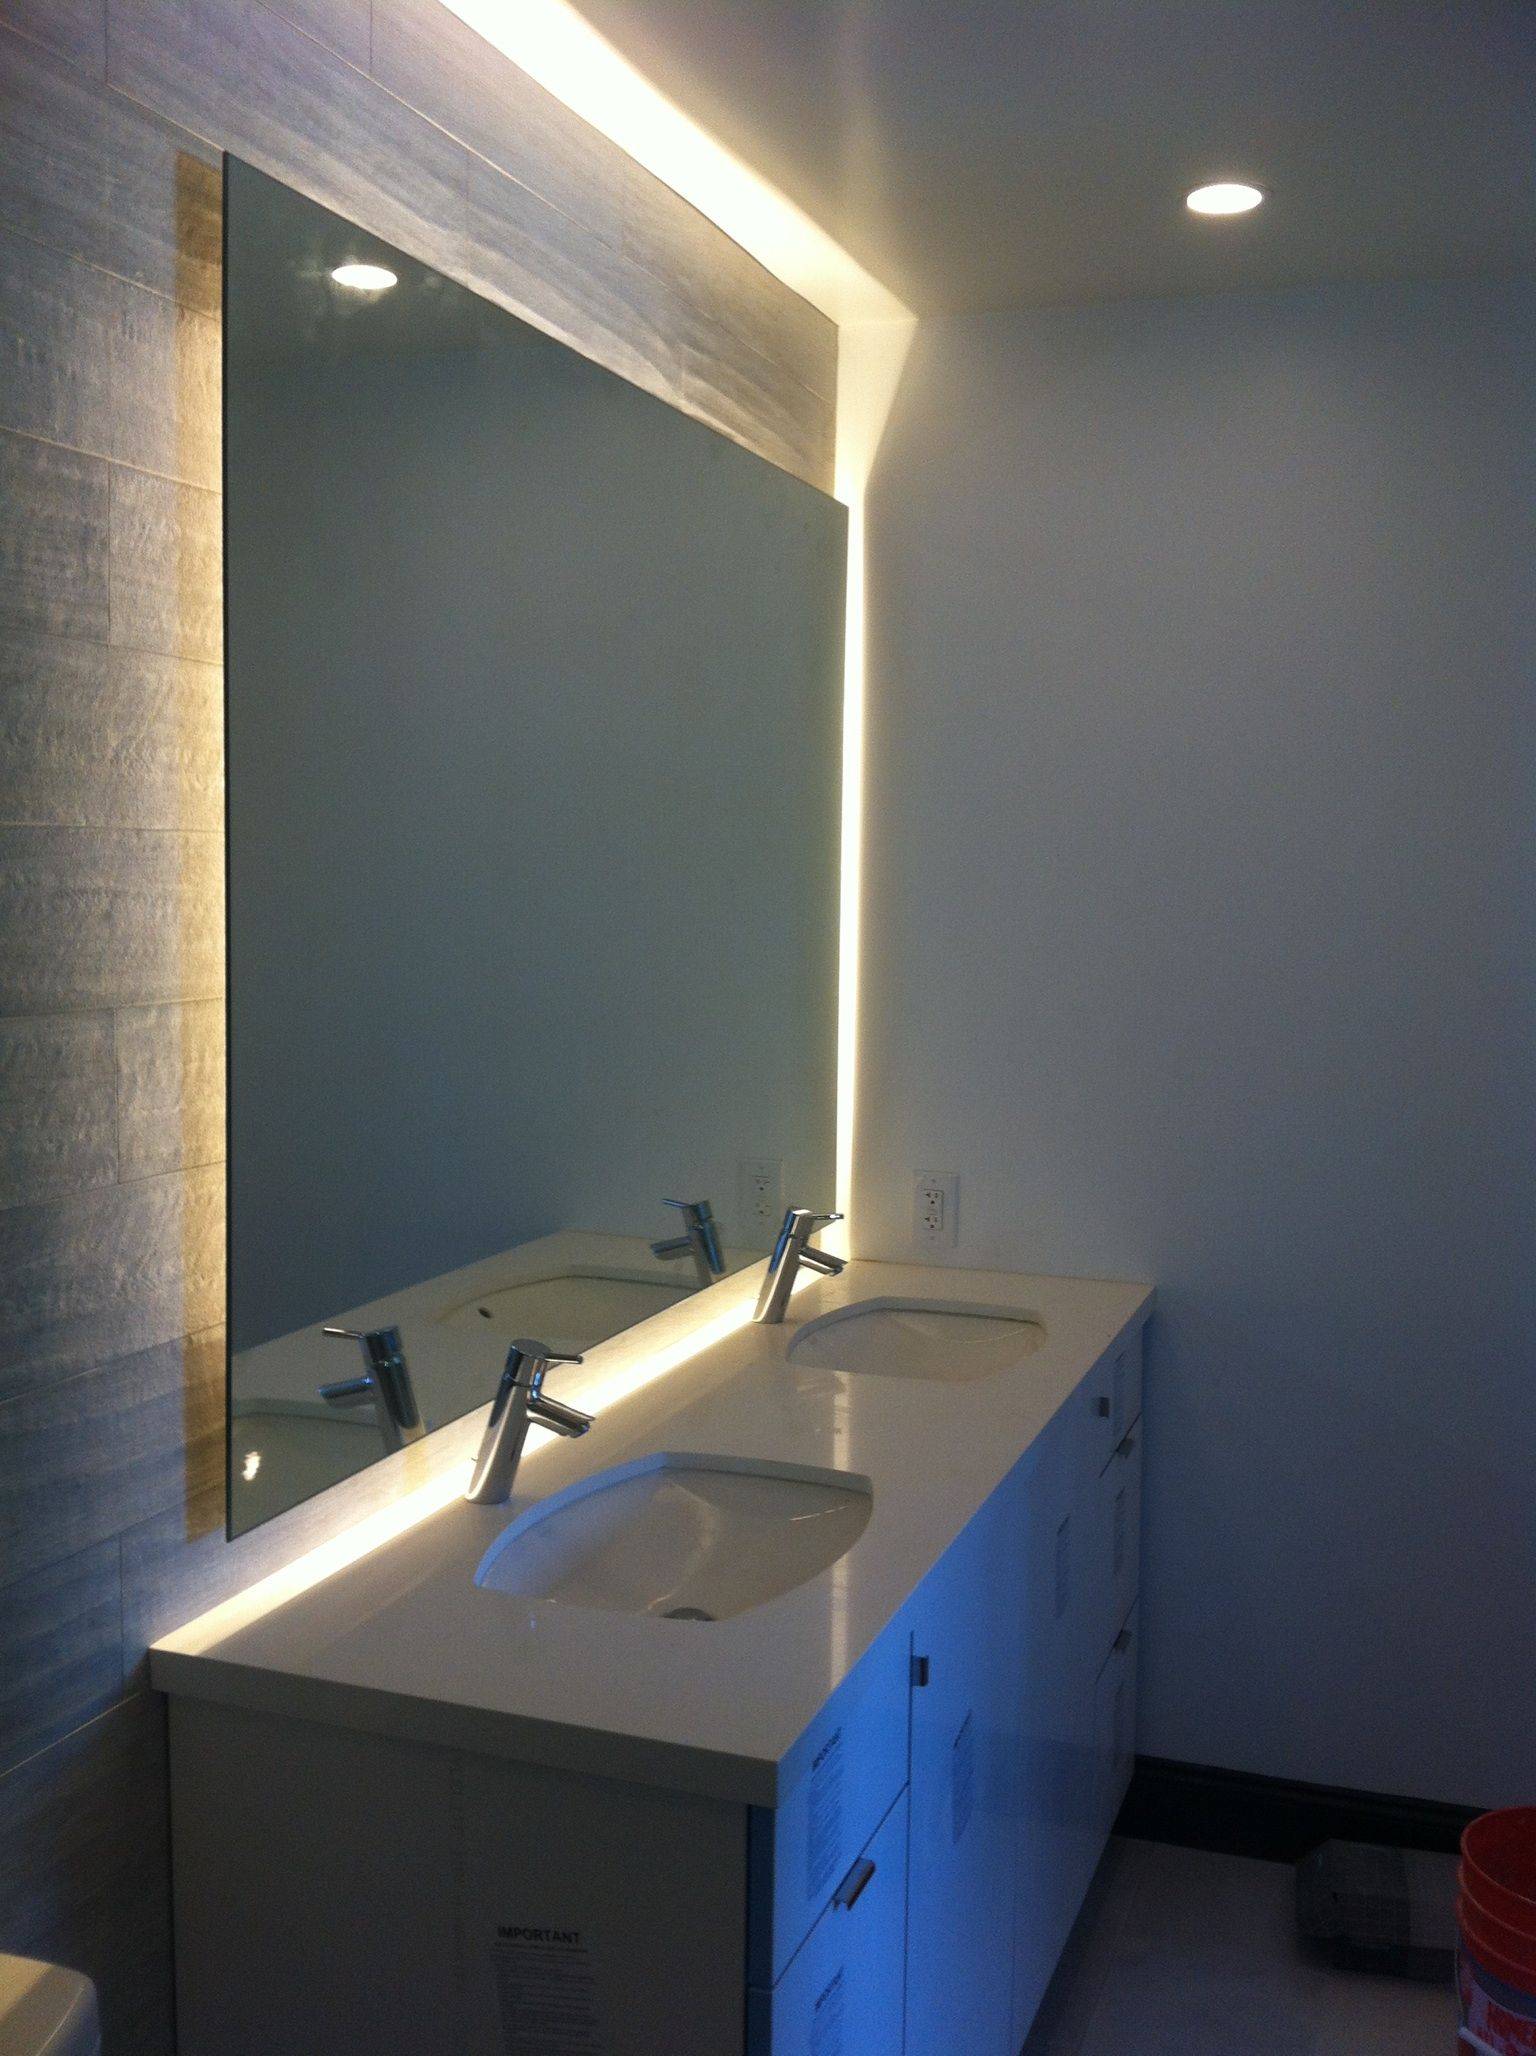 Светодиодное освещение в ванной